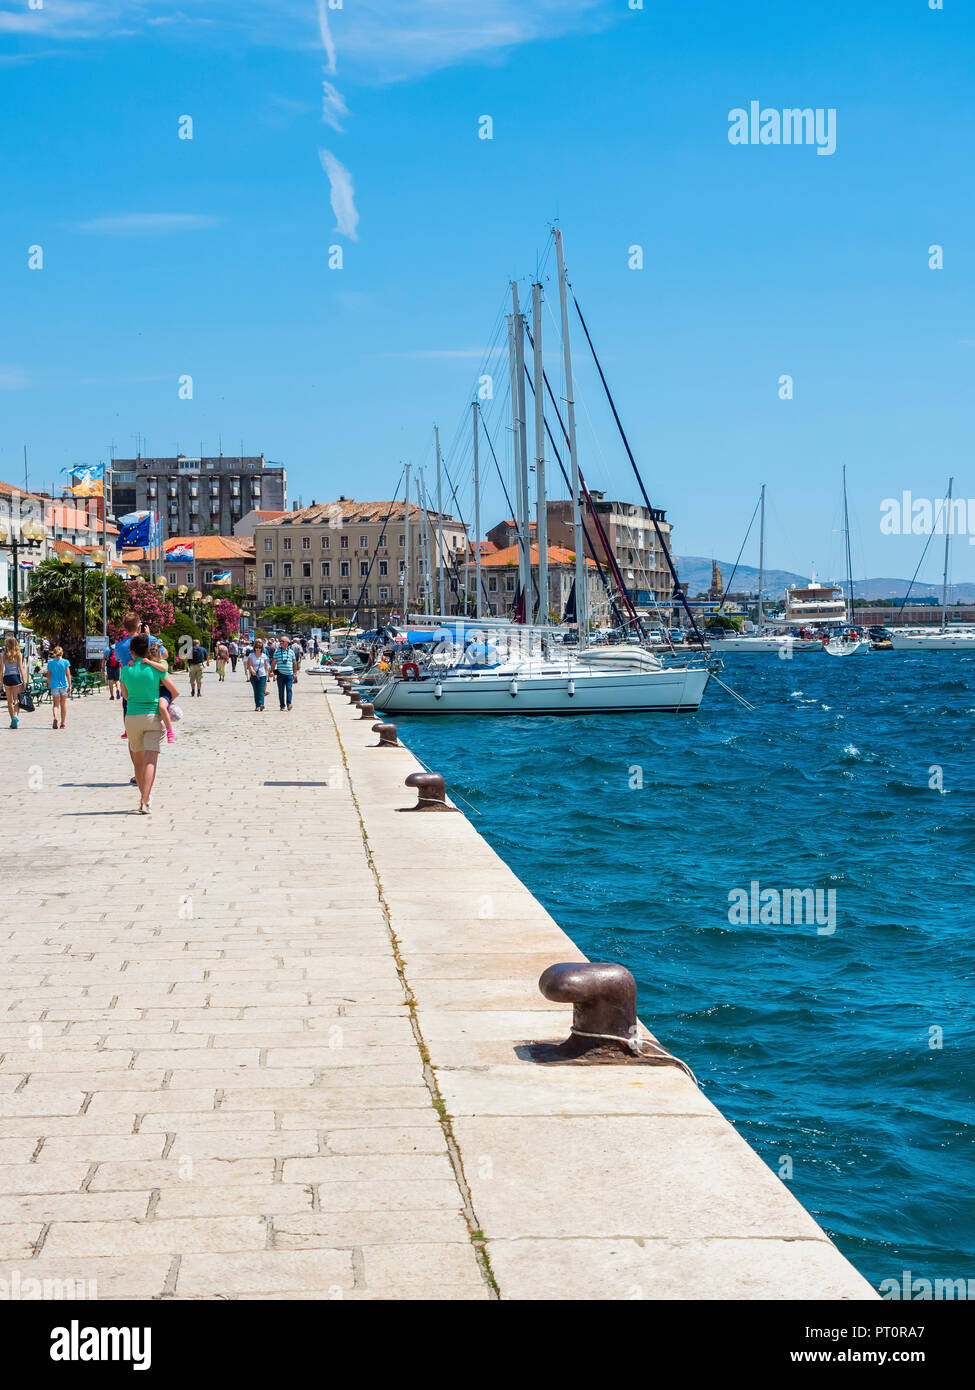 Kroatien, Adriaküste, Dalmatien, Regione Spalato e Sebenico mit Uferpromenade und Segelyachten Foto Stock